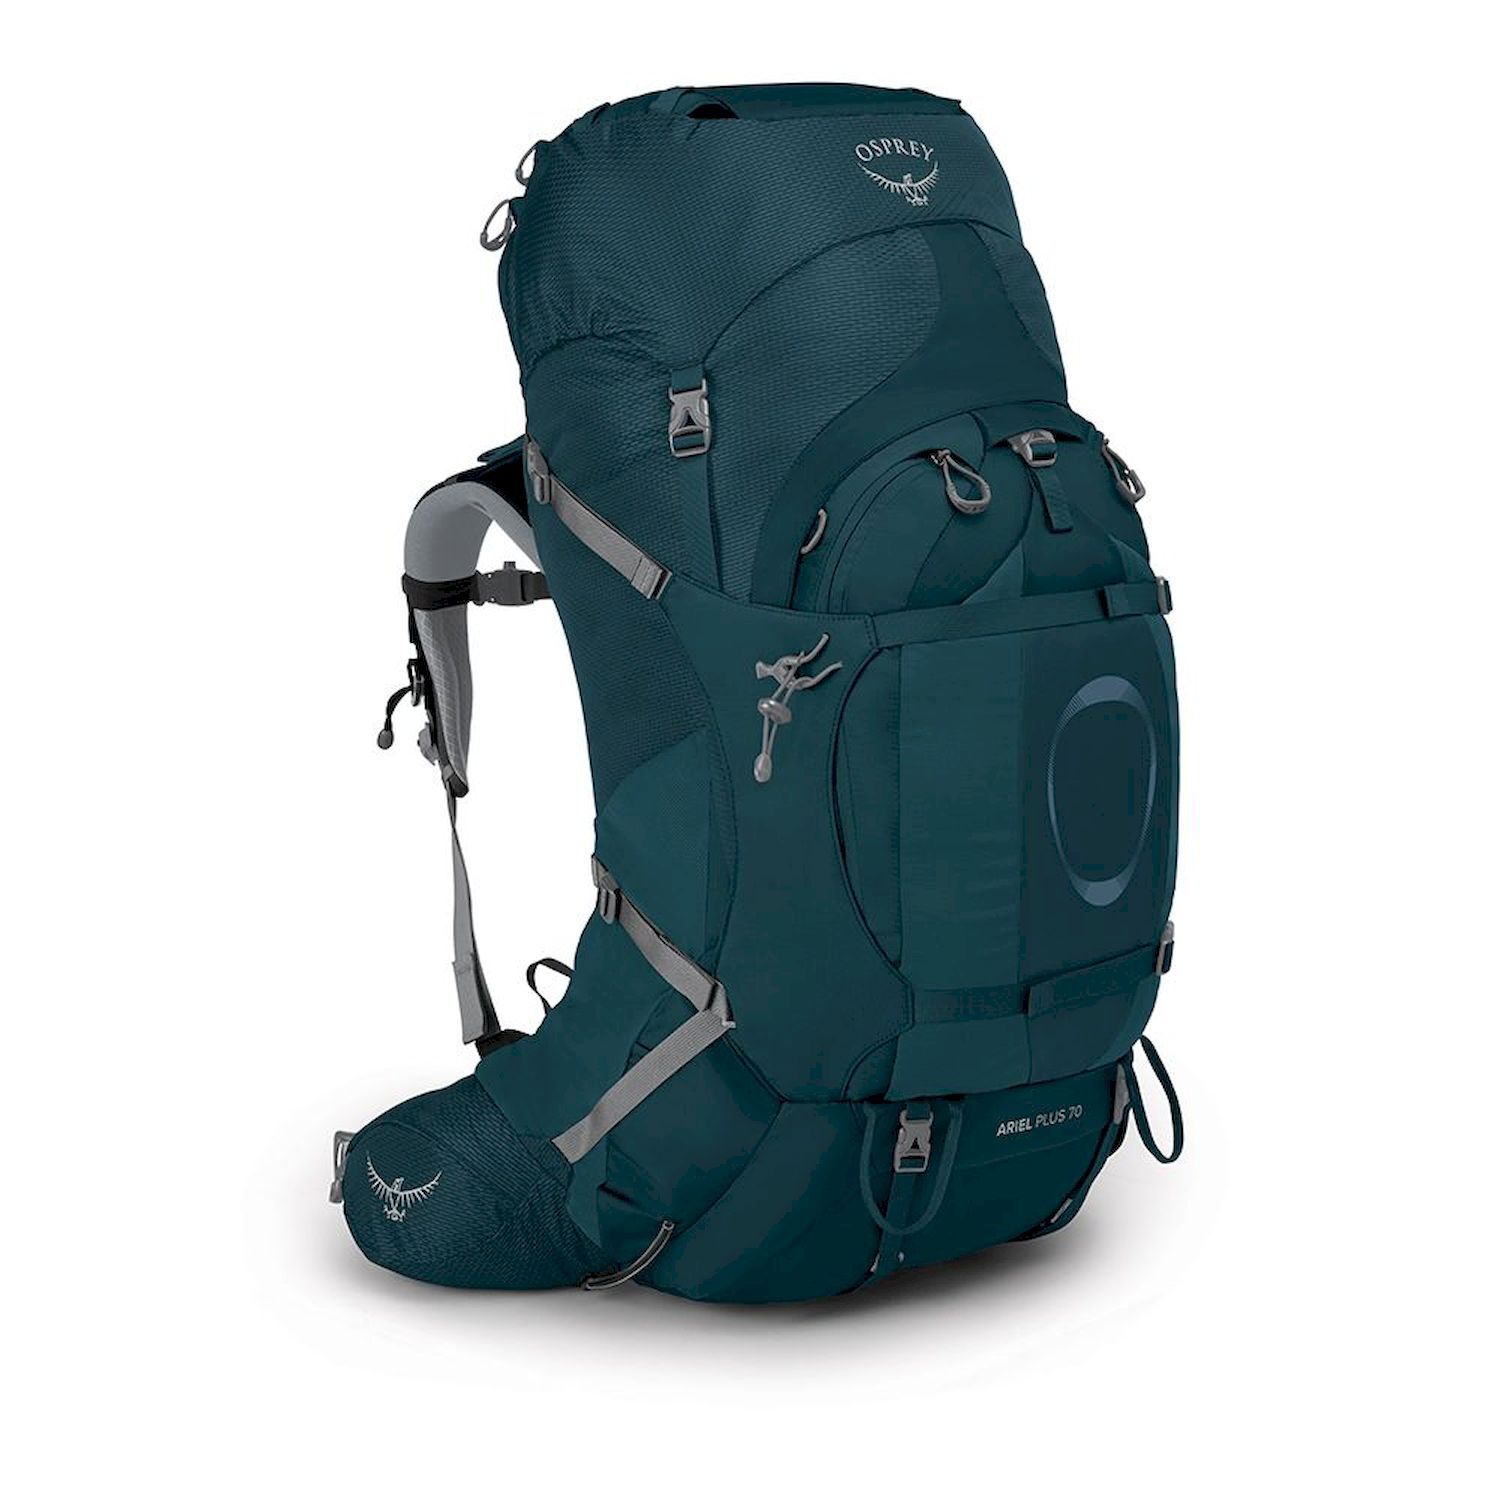 Osprey Ariel Plus 70 - Hiking backpack - Women's